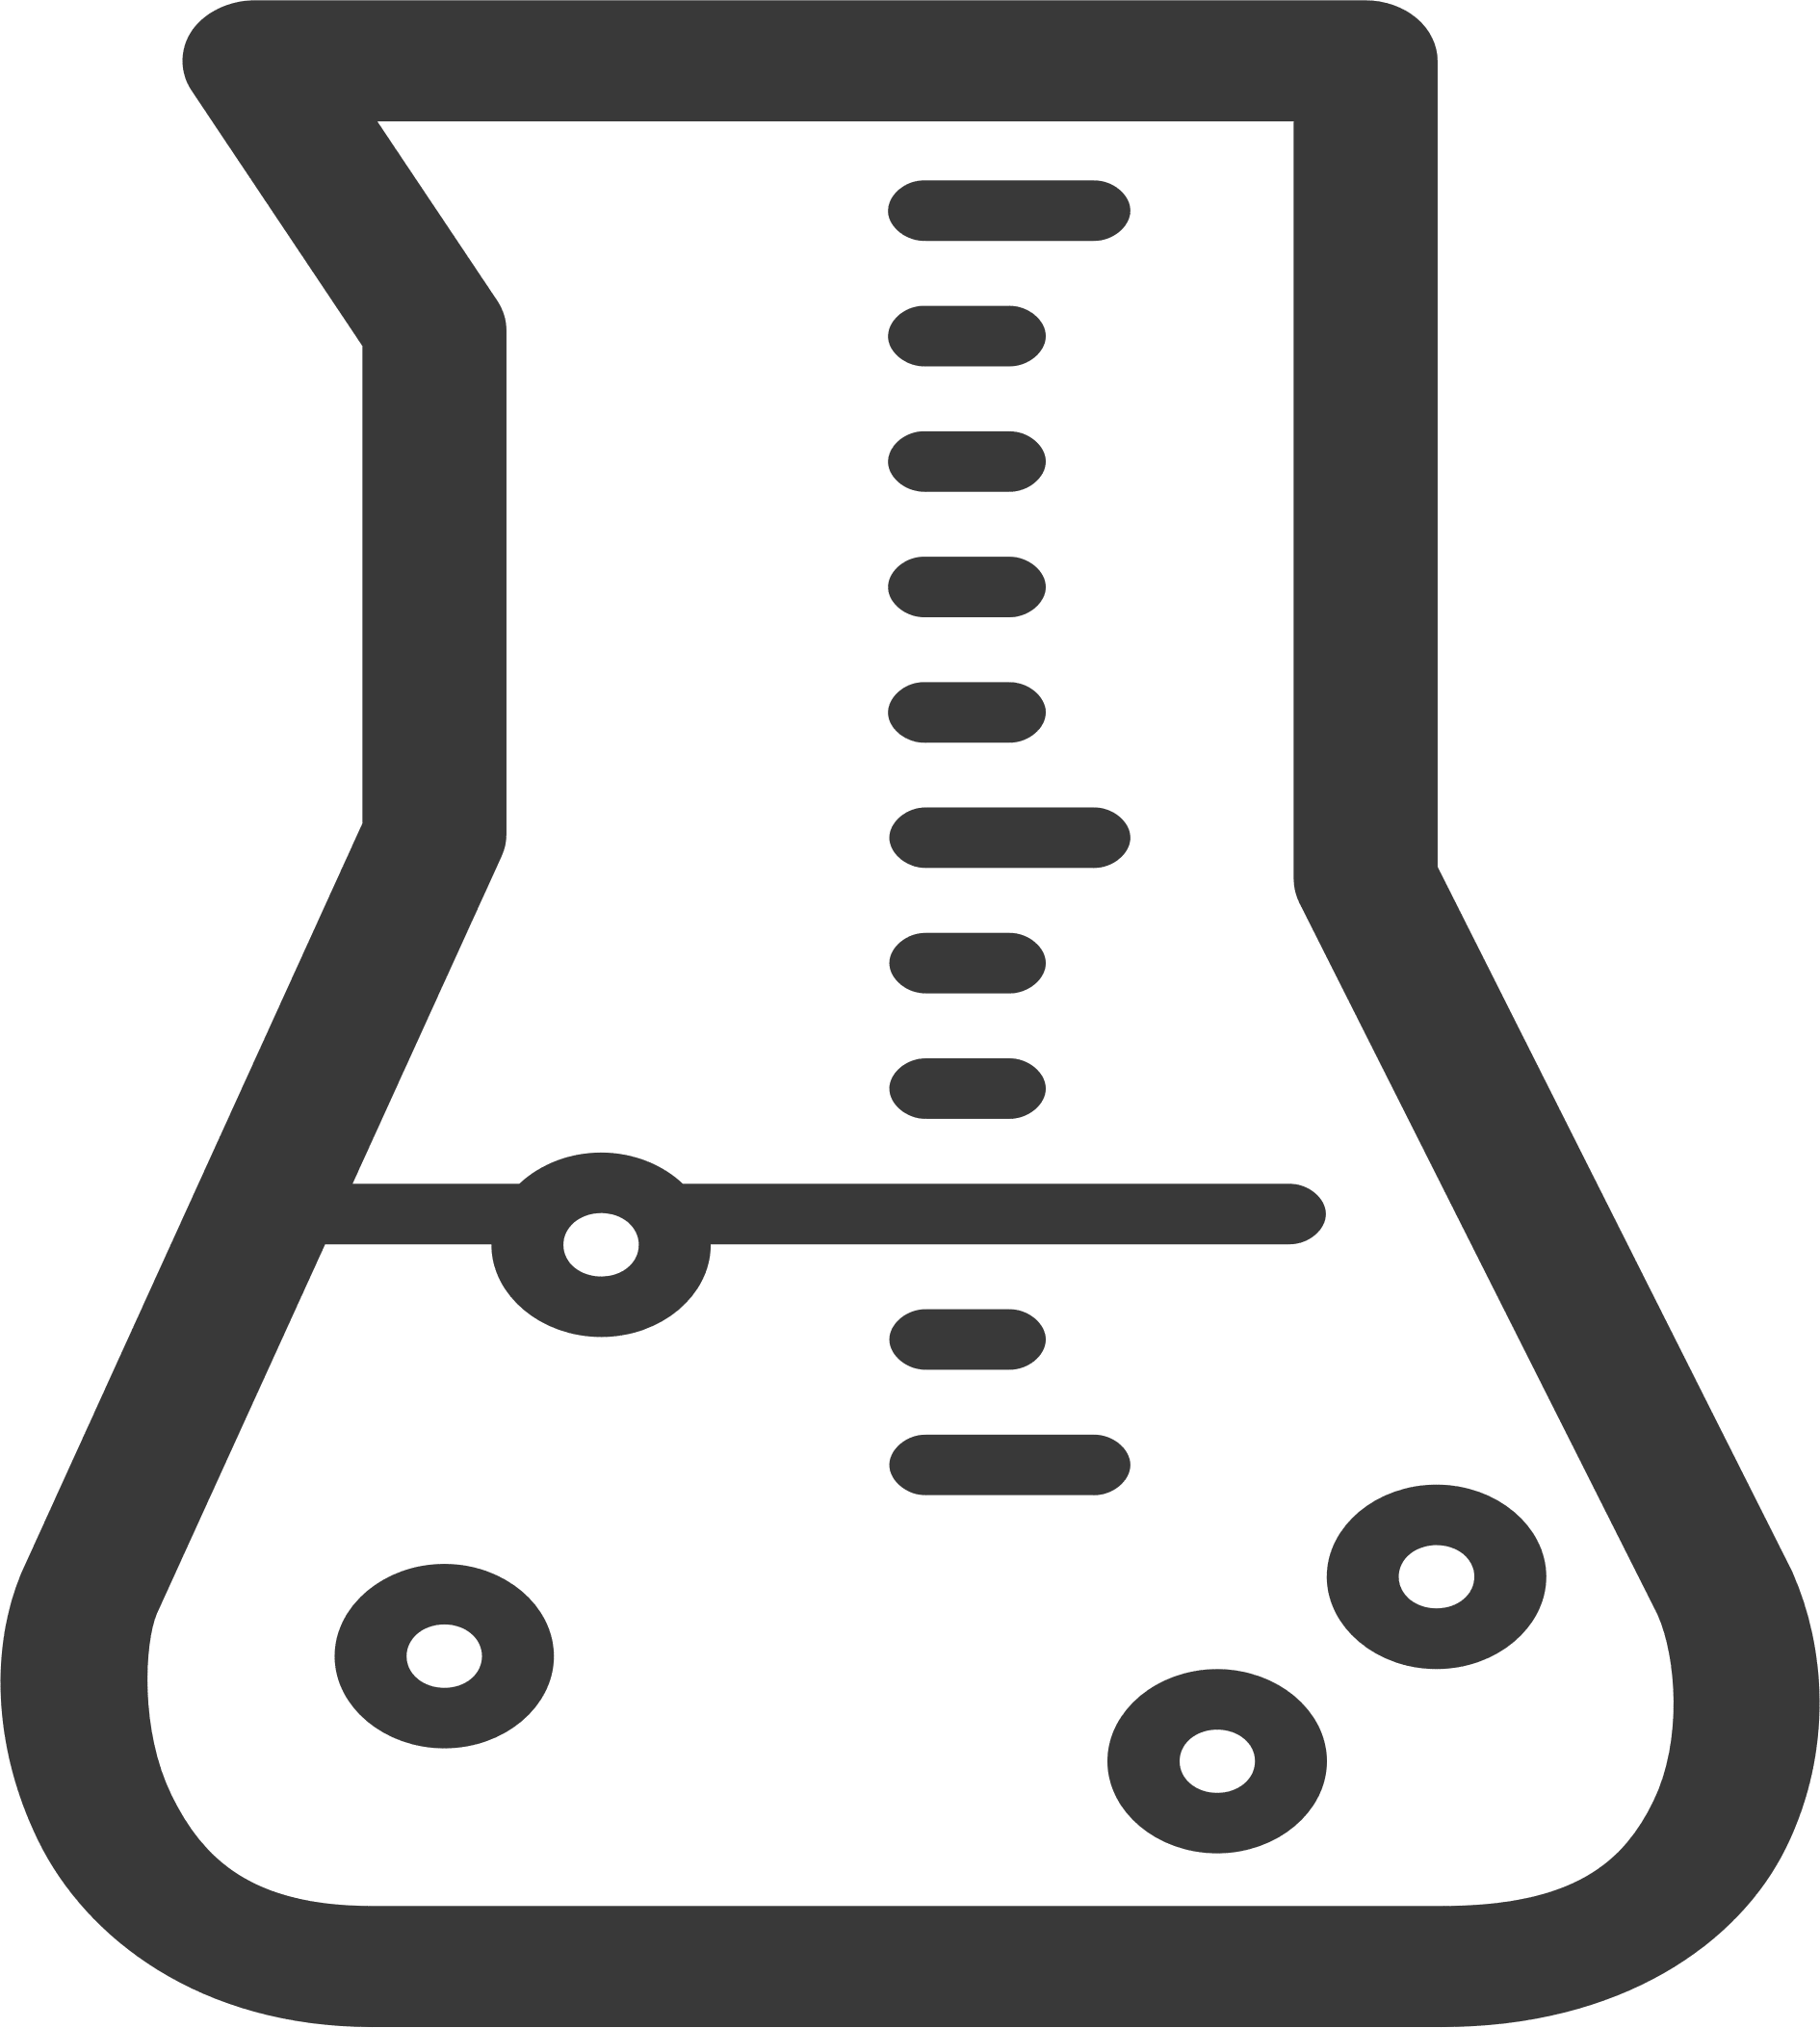 chemistry beaker